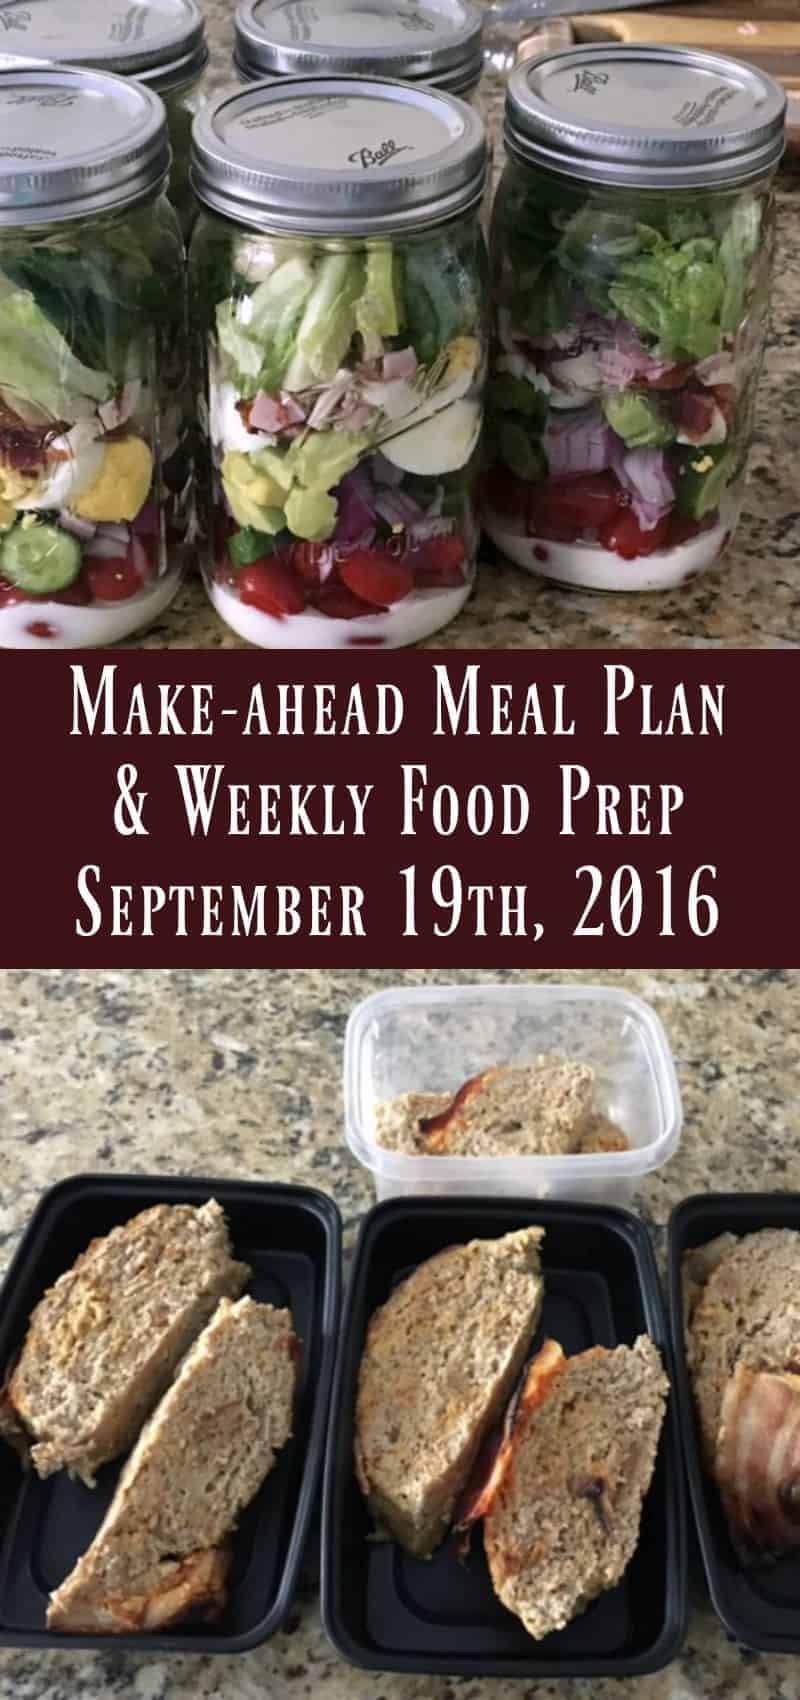 Make-ahead Meal Plan & Weekly Food Prep 